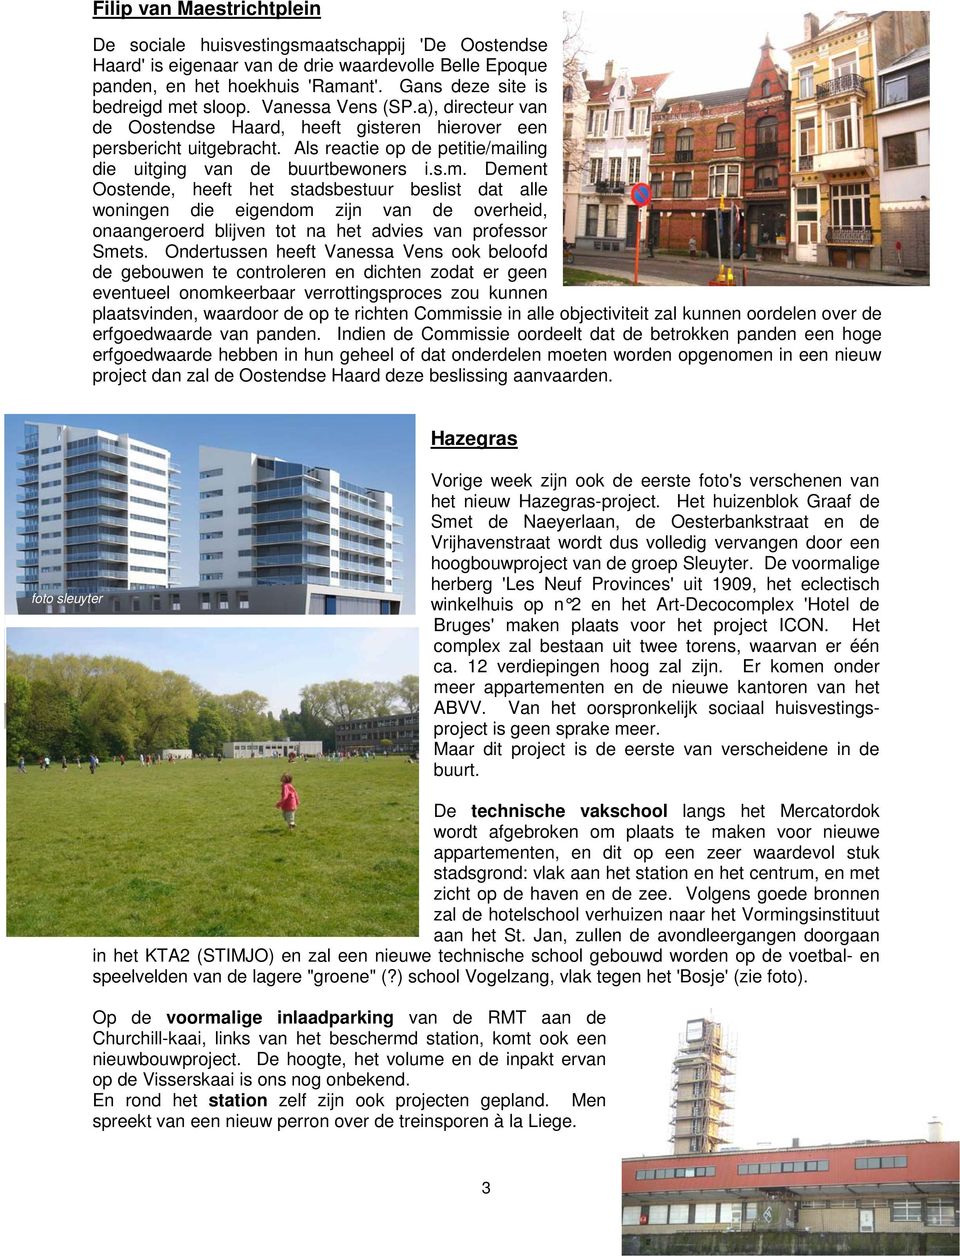 Als reactie op de petitie/mailing die uitging van de buurtbewoners i.s.m. Dement Oostende, heeft het stadsbestuur beslist dat alle woningen die eigendom zijn van de overheid, onaangeroerd blijven tot na het advies van professor Smets.